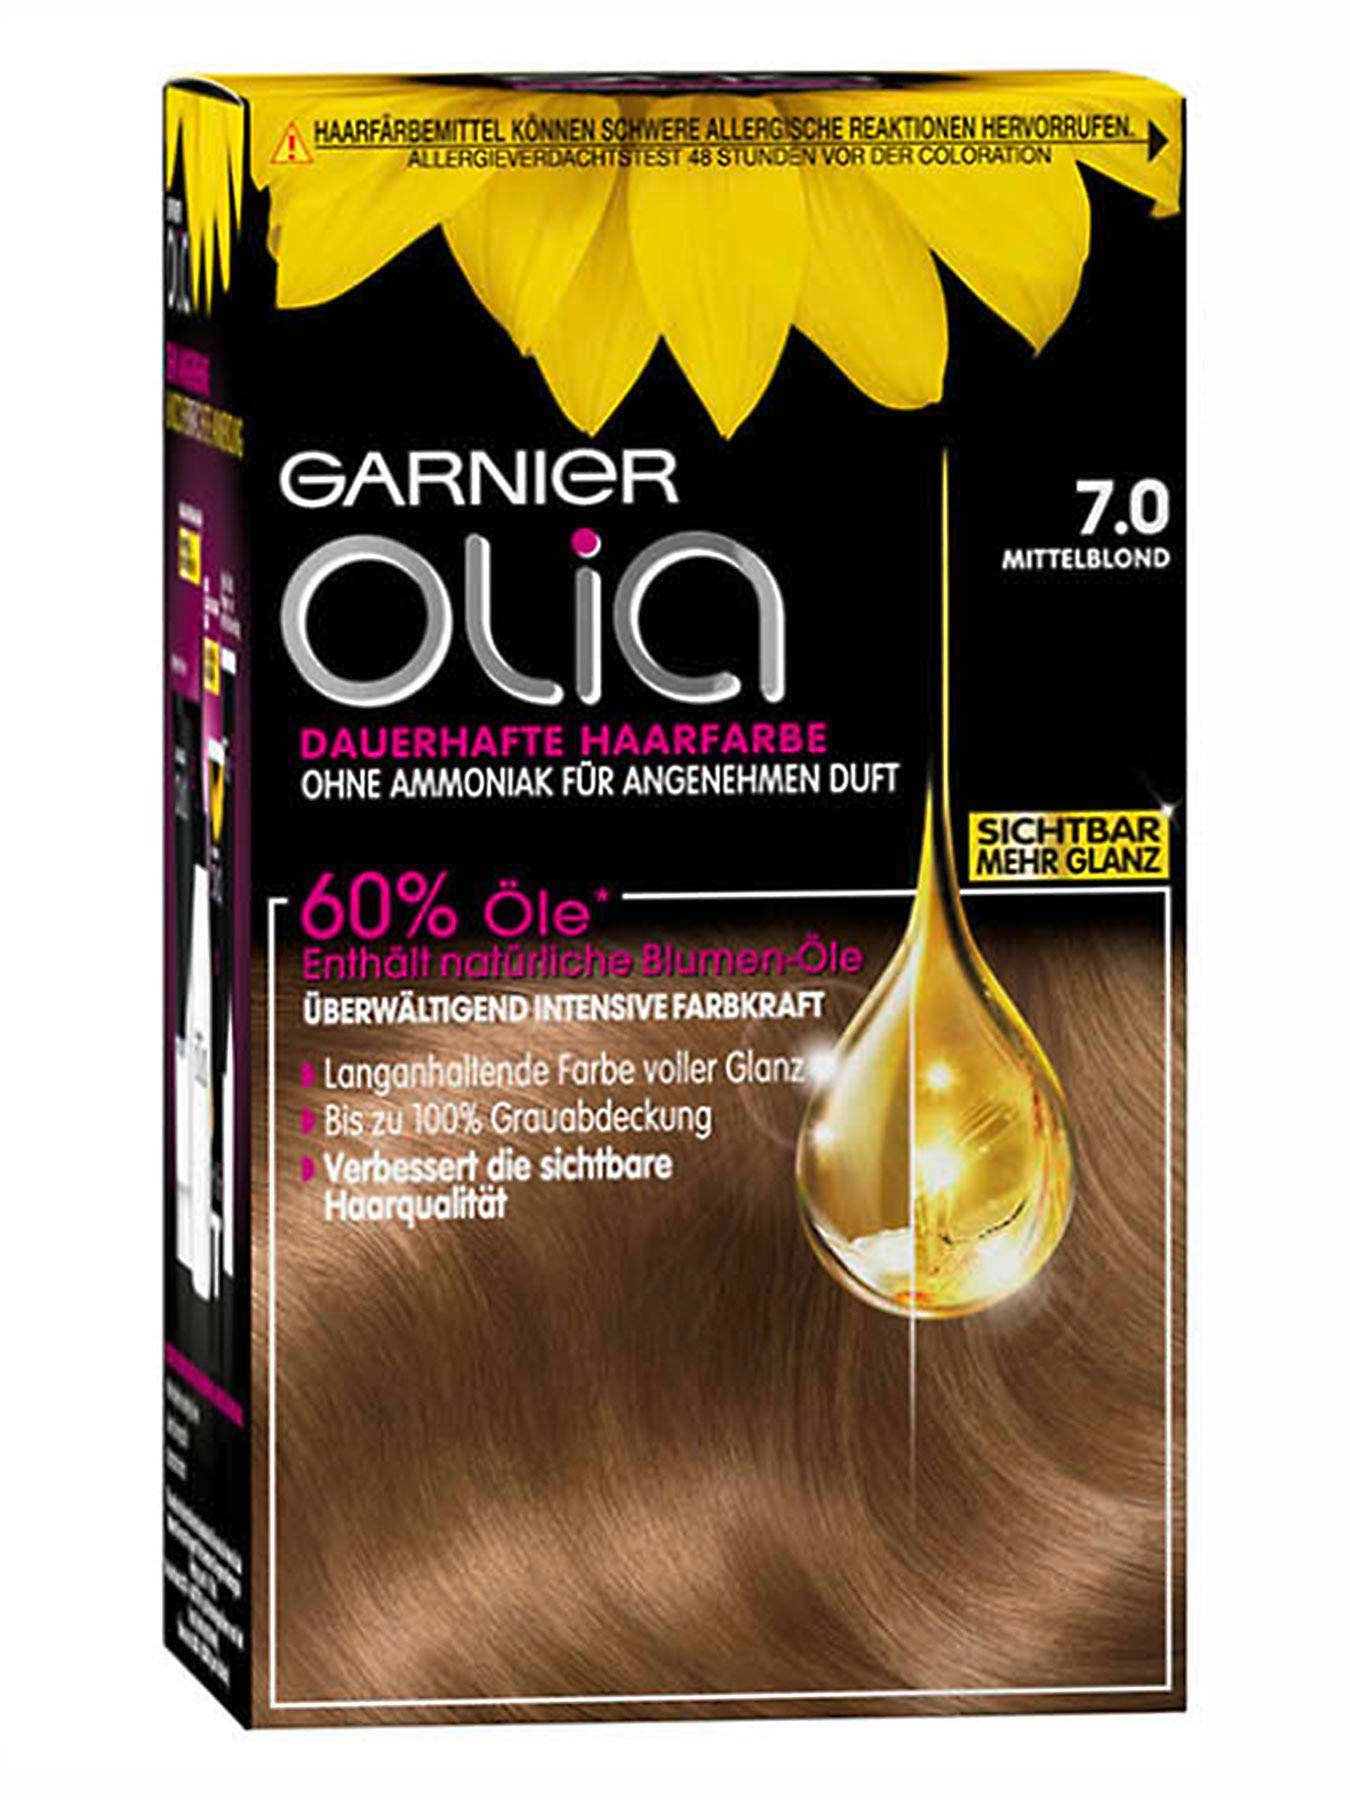 Nr 7 0 In Mittelblond Dauerhafte Haarfarbe Mit Intensiver Farbkraft Garnier